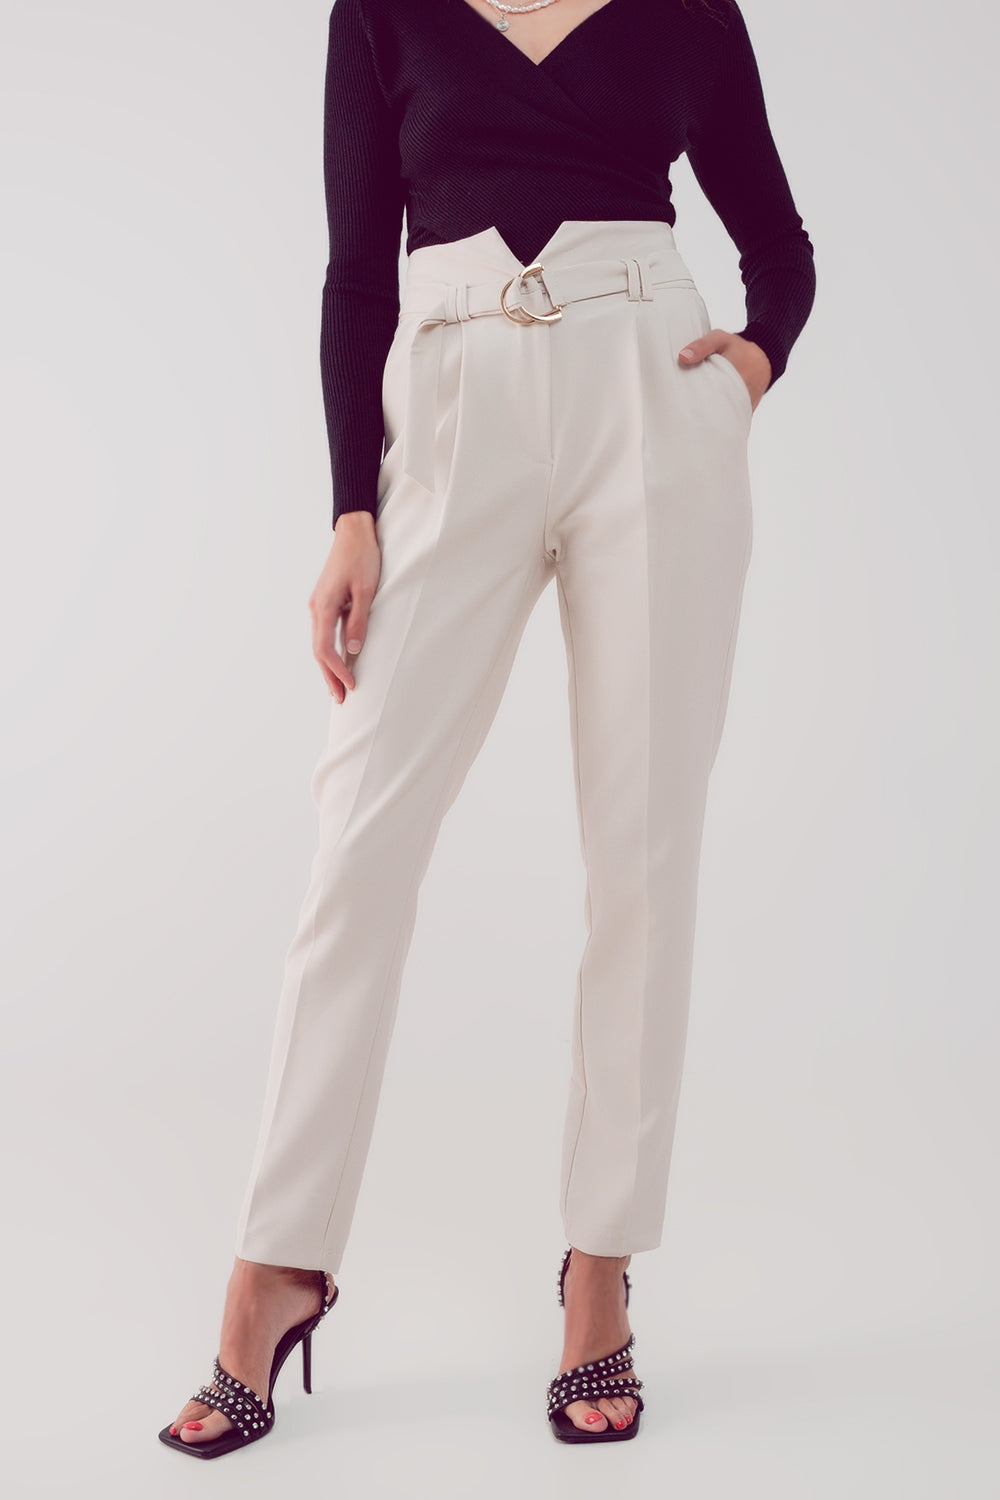 pantalones pitillo con cintura paper bag en color crema